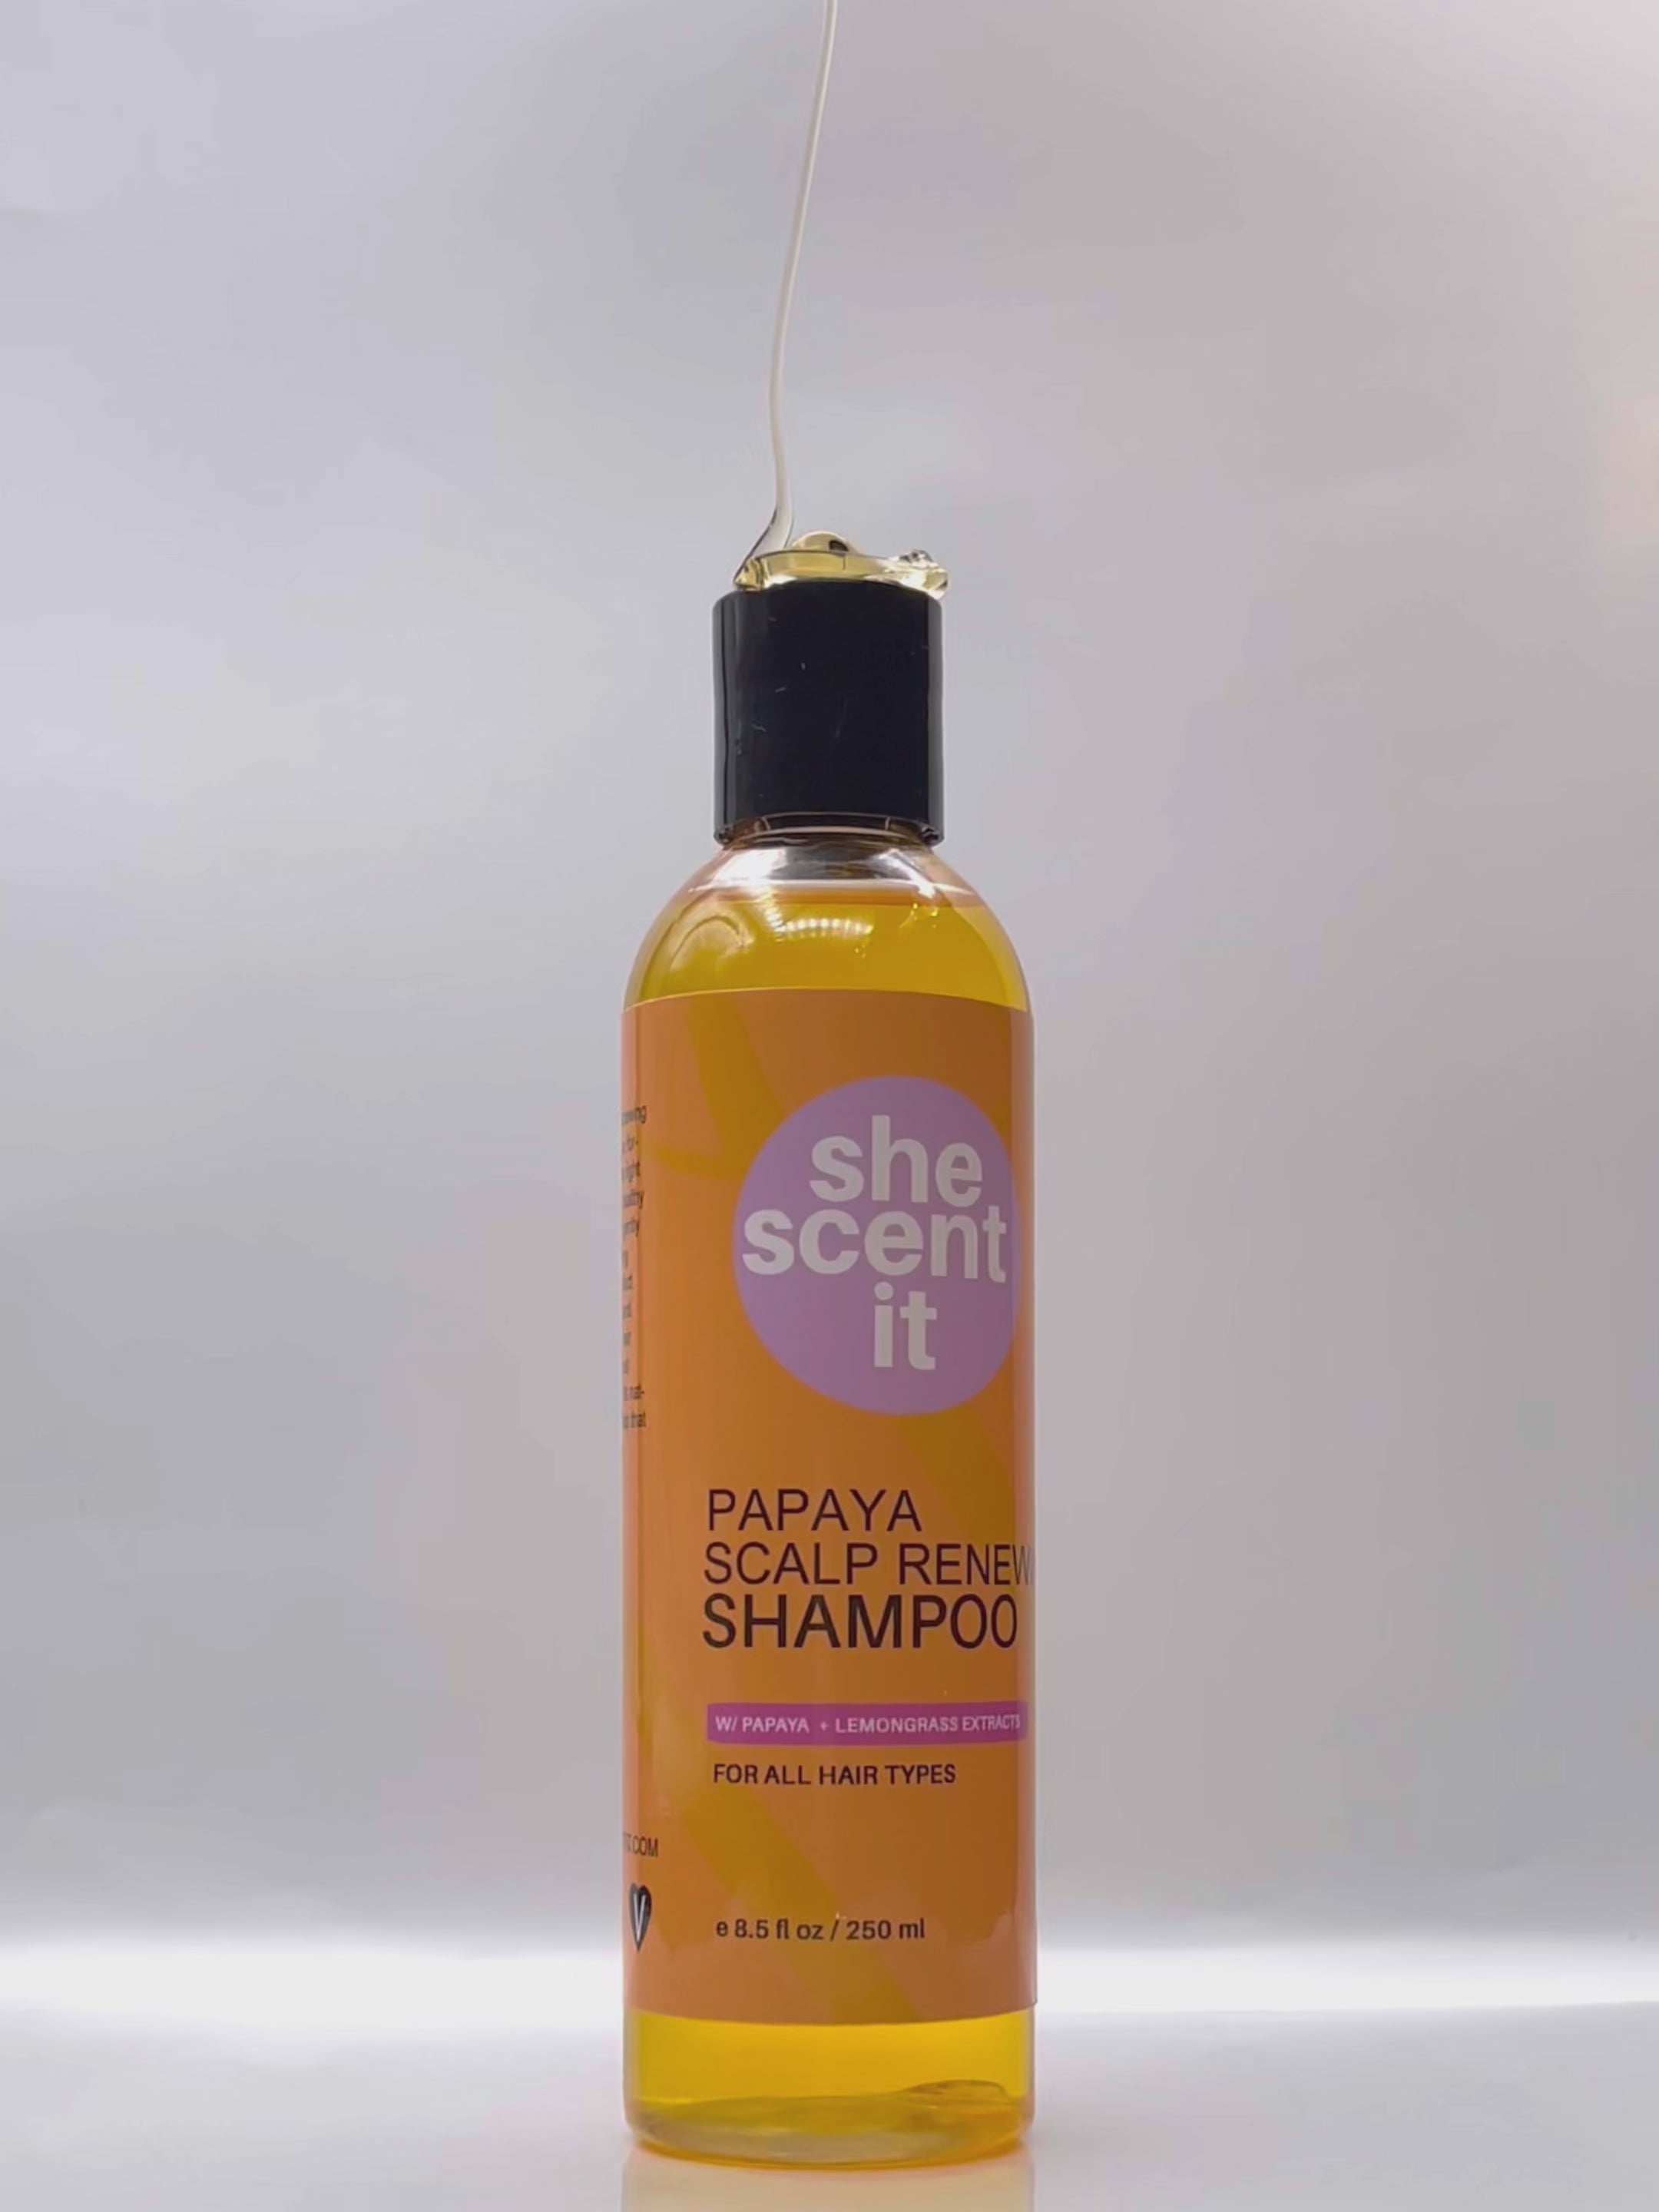 Papaya Scalp Renewing Shampoo